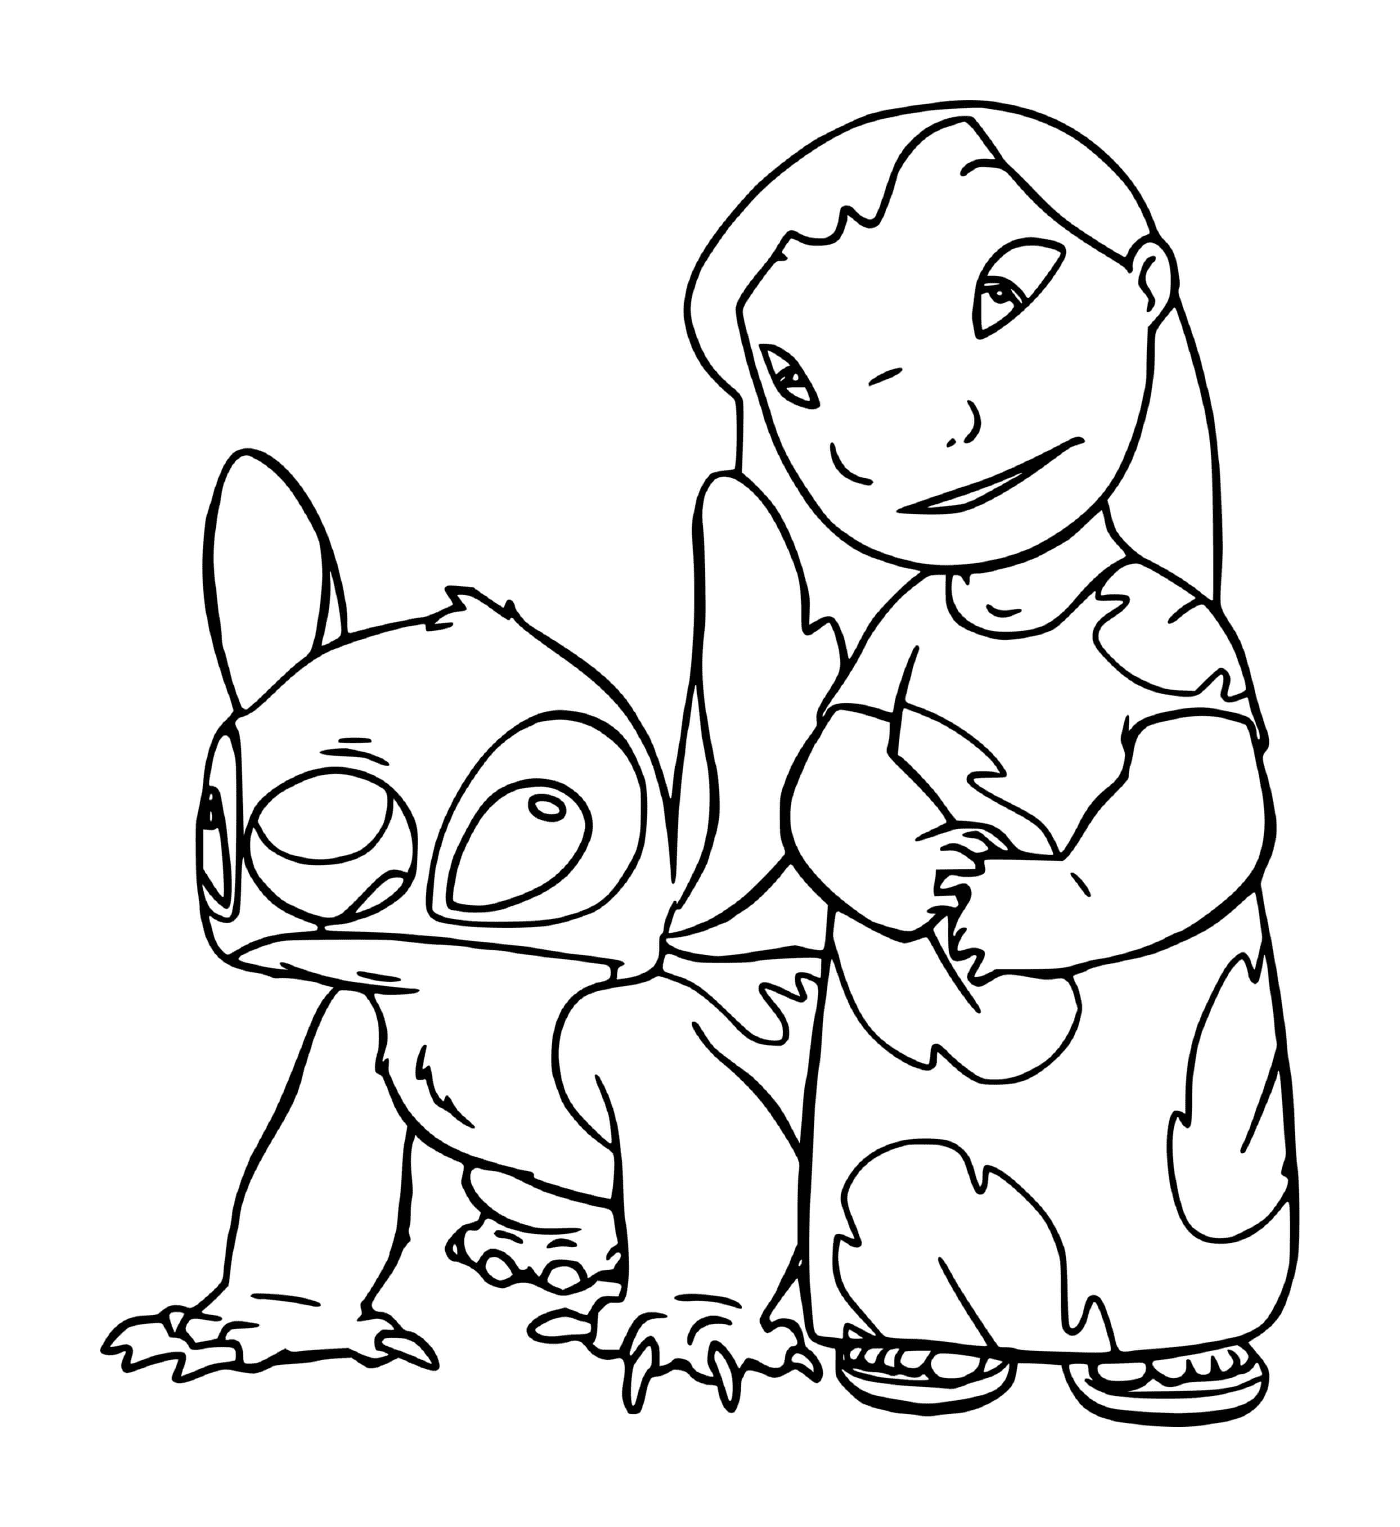  Stitch e Lilo in pigiama notturno 